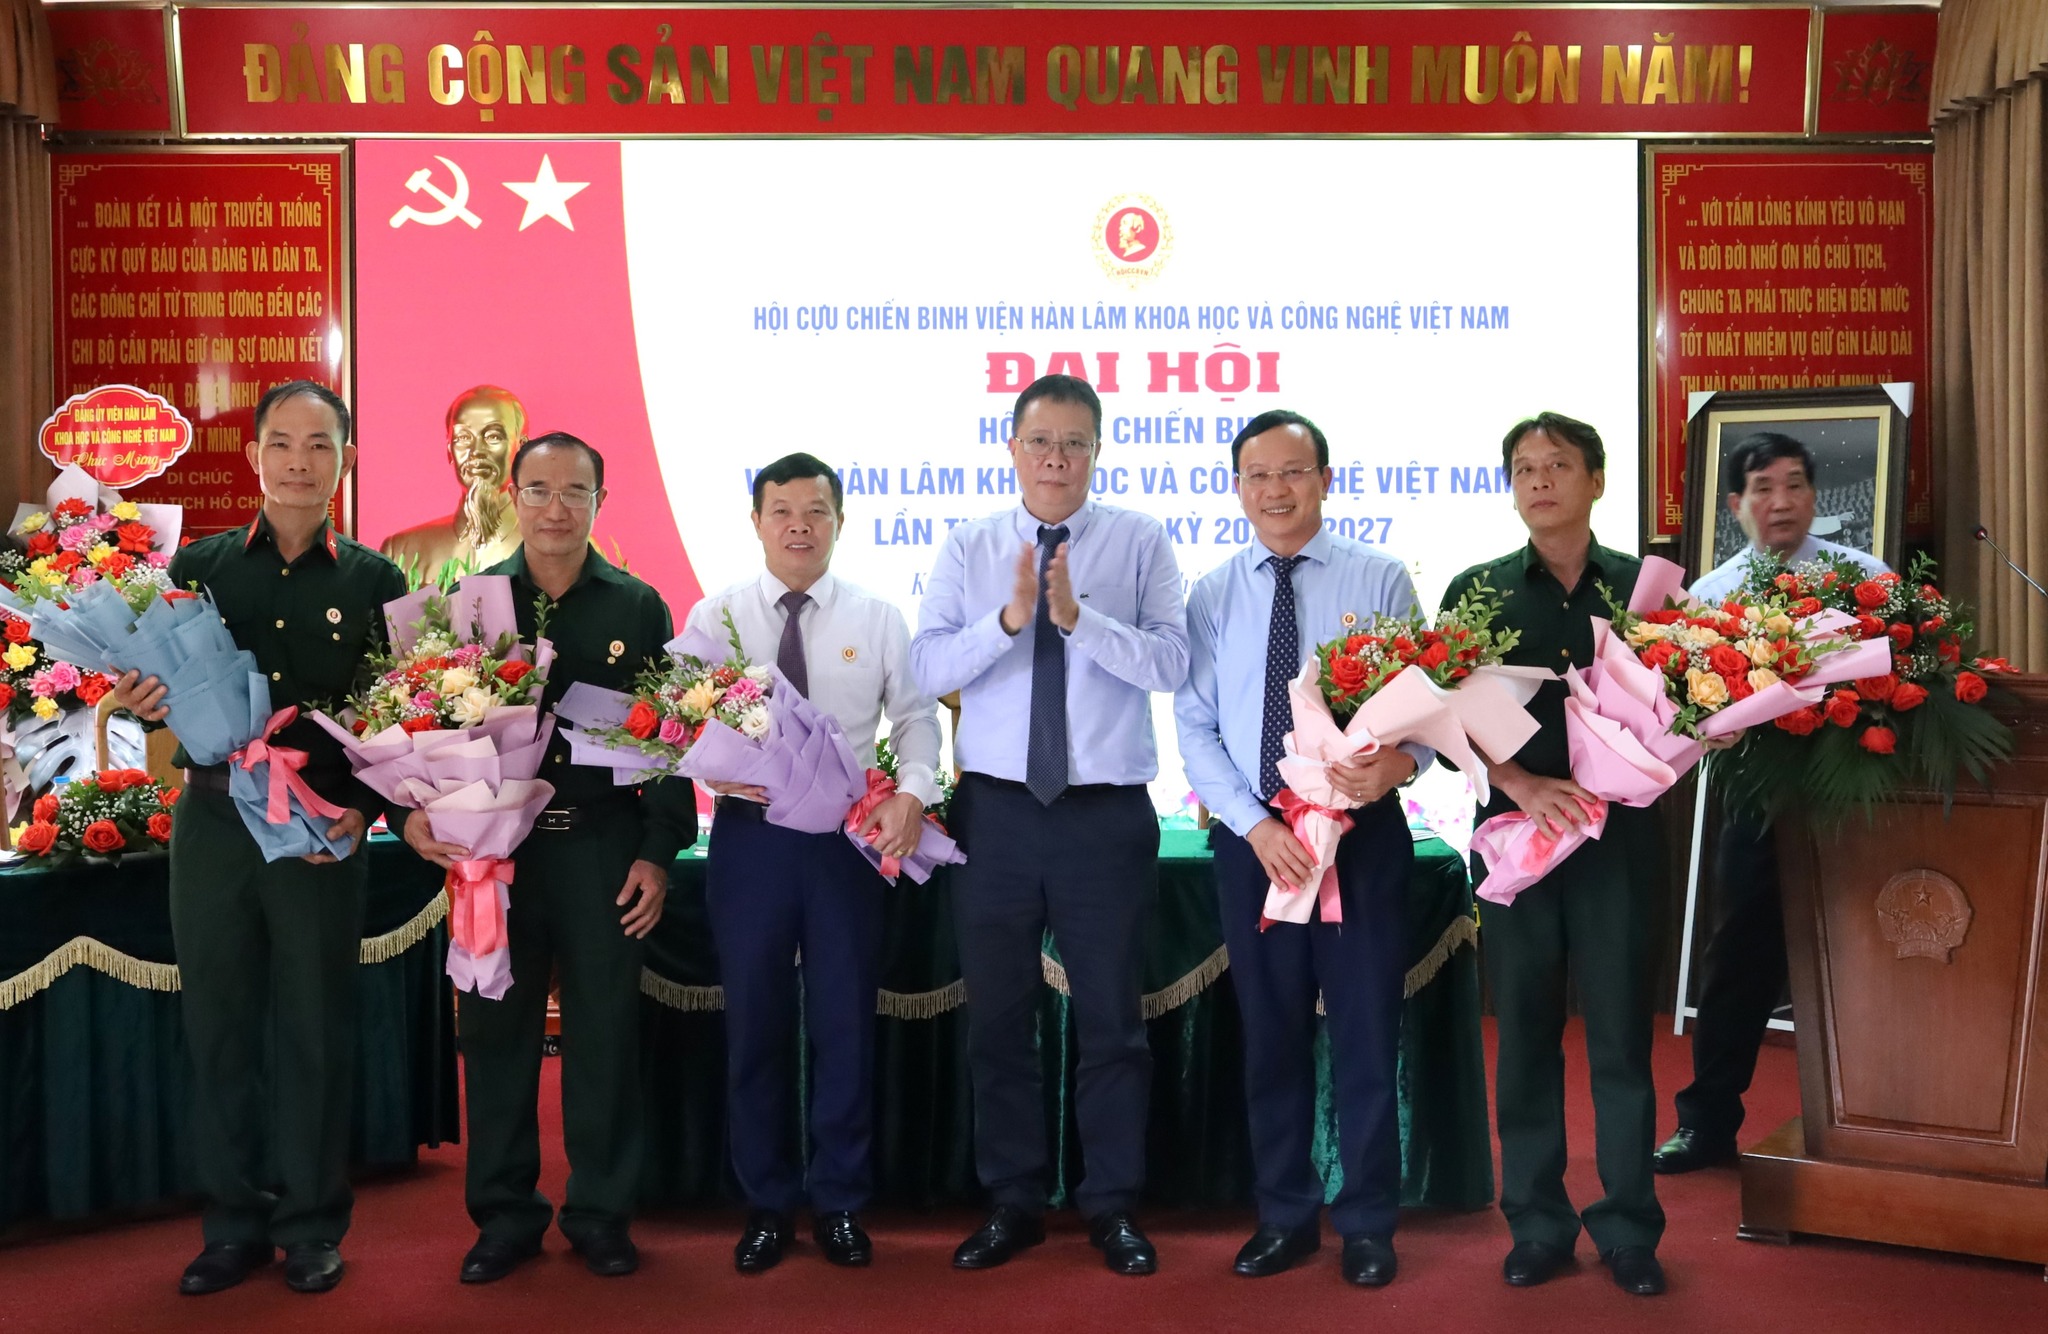 Đại hội Hội Cựu chiến binh Viện Hàn lâm Khoa học và Công nghệ Việt Nam lần thứ IV, Nhiệm kỳ 2022 - 2027 và chương trình hành quân về nguồn năm 2022